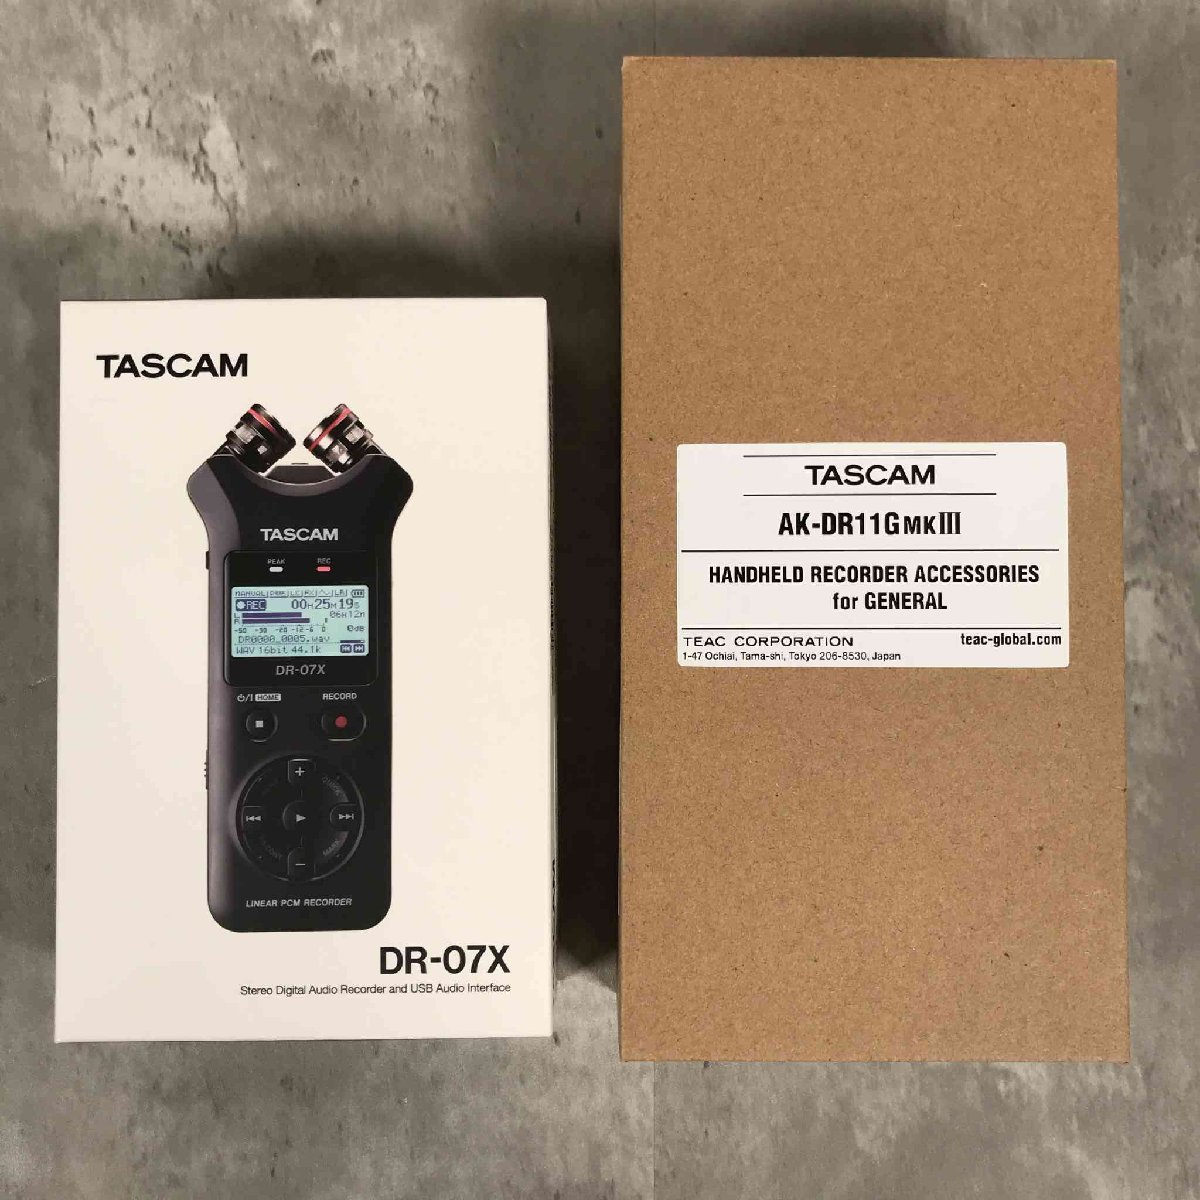 【新品未使用】TASCAM タスカム/DR-07X/アクセサリーパッケージAK-DR11G MKIII/セット/ハンディレコーダー/録音機材【送料無料】